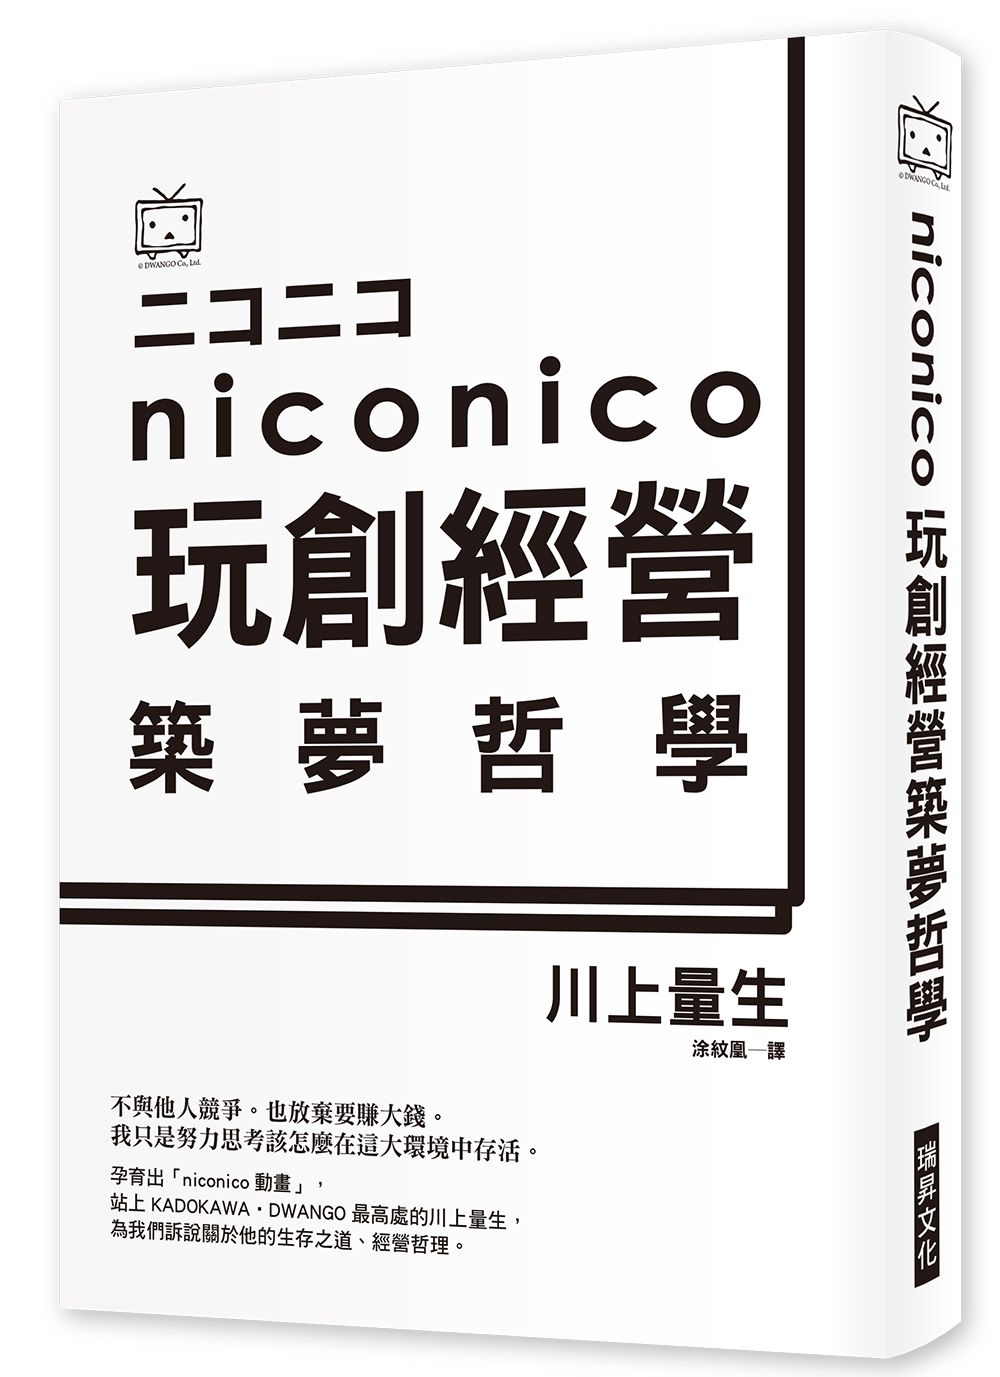 NICO NICO 玩創經營築夢哲學：日本最夯彈幕影音分享網...